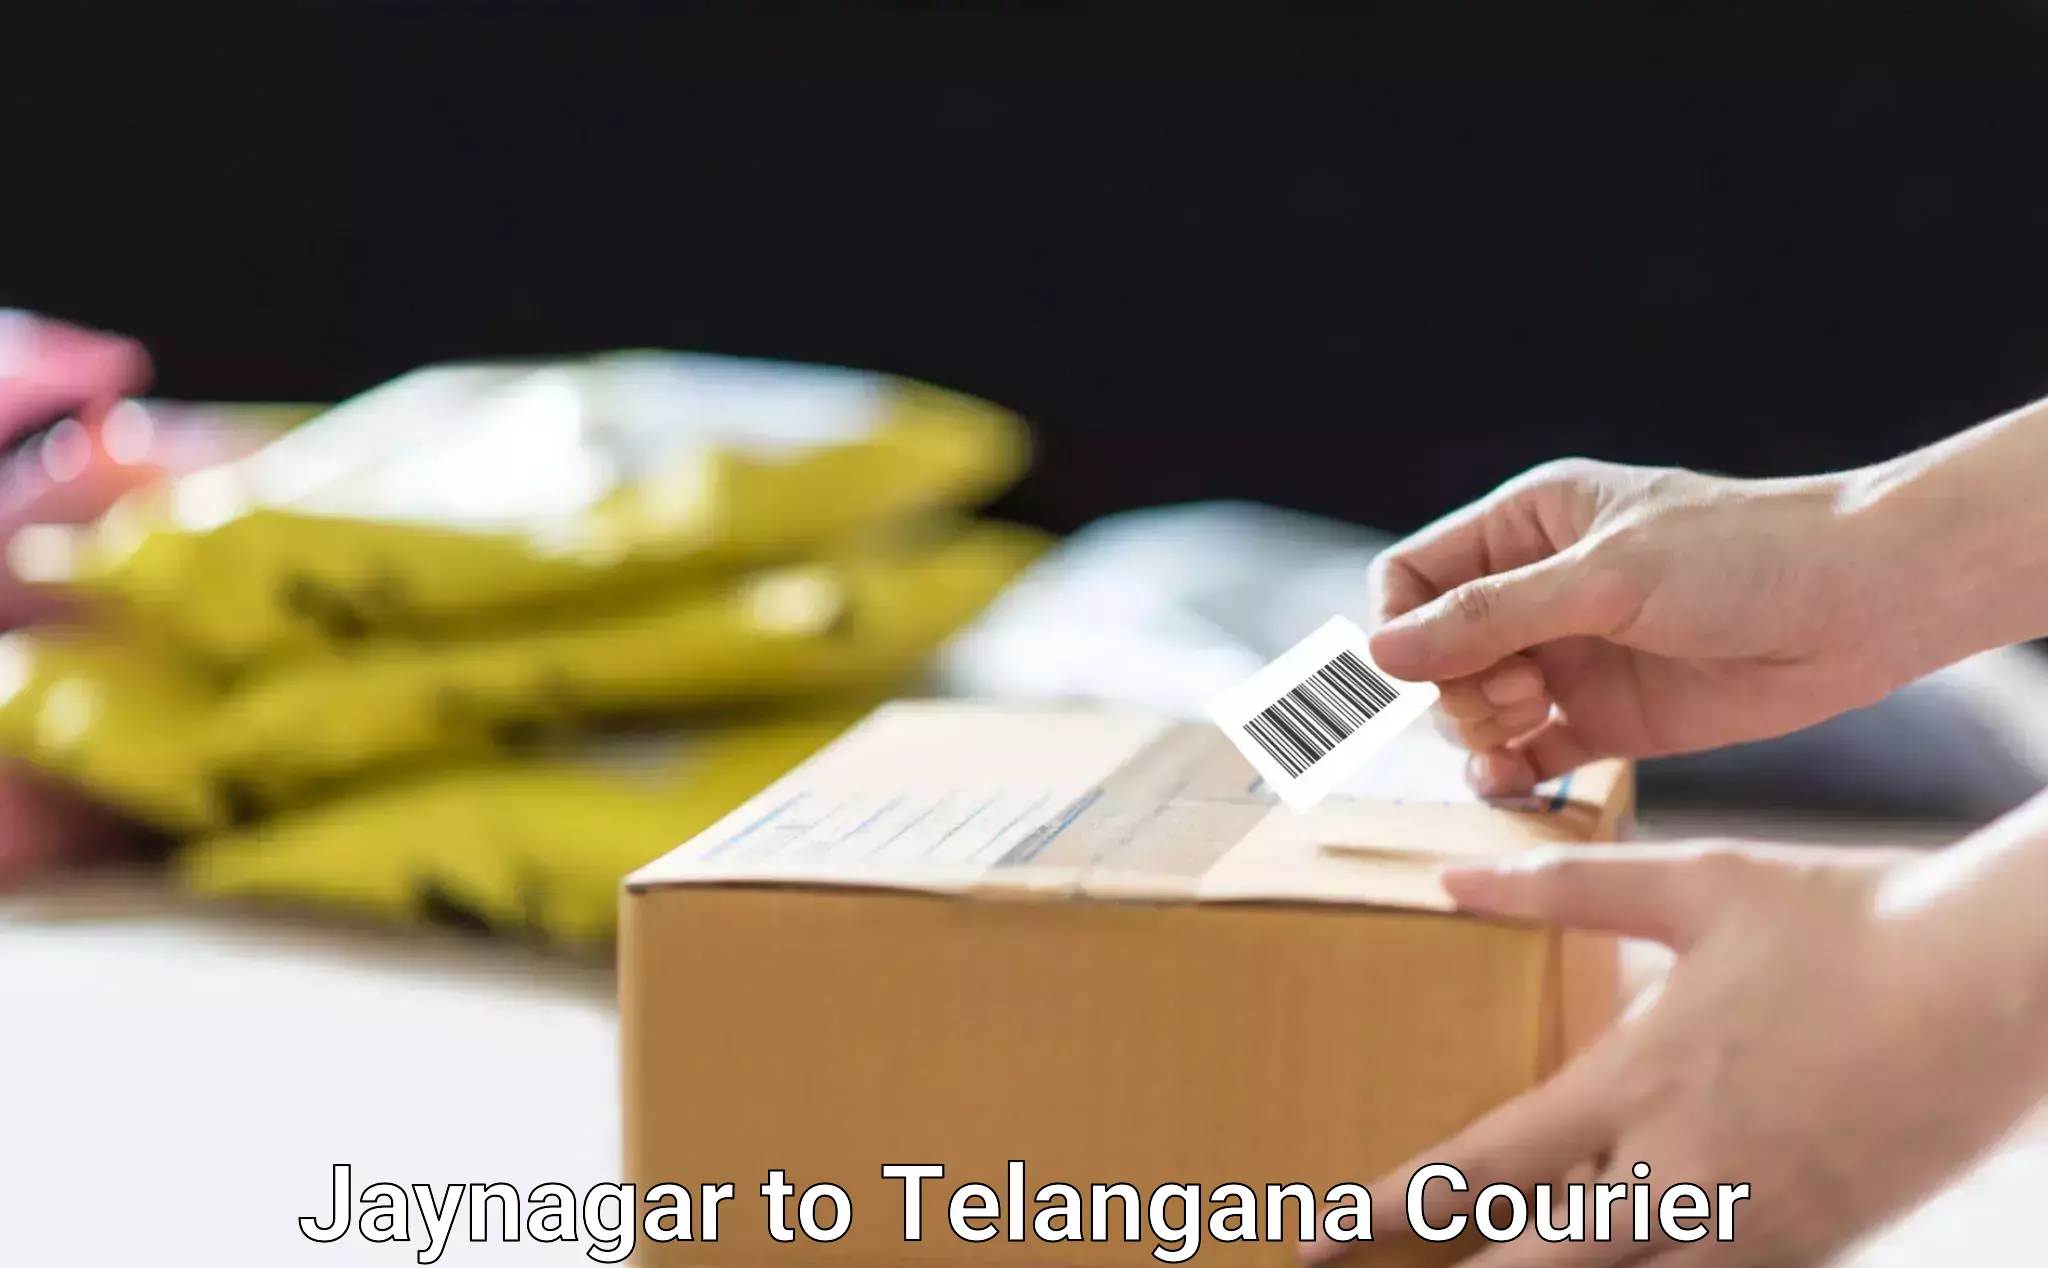 Furniture moving services Jaynagar to Telangana